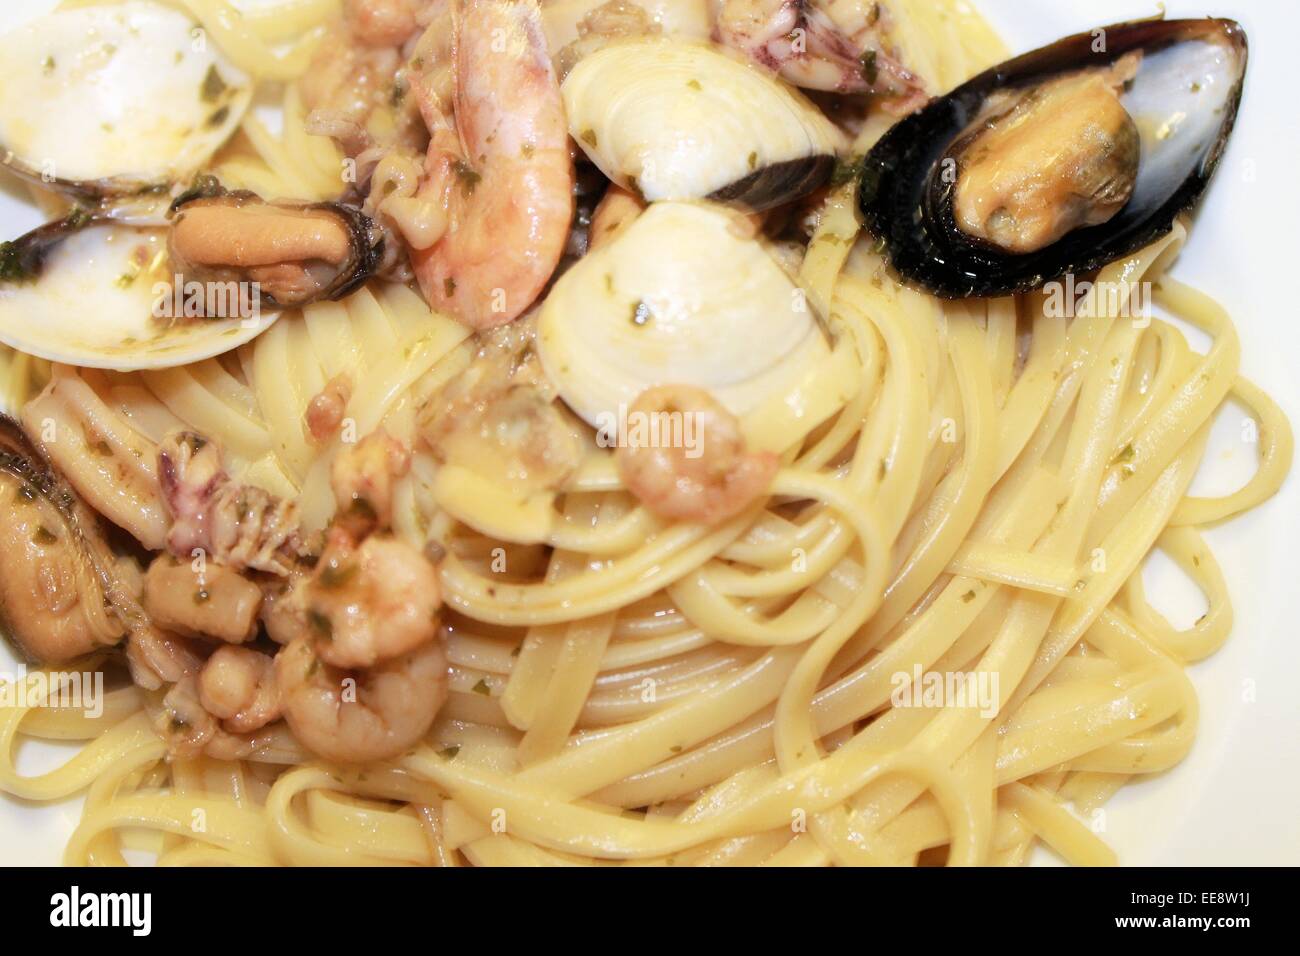 Les pâtes spaghetti aux crevettes, les moules et les palourdes Banque D'Images